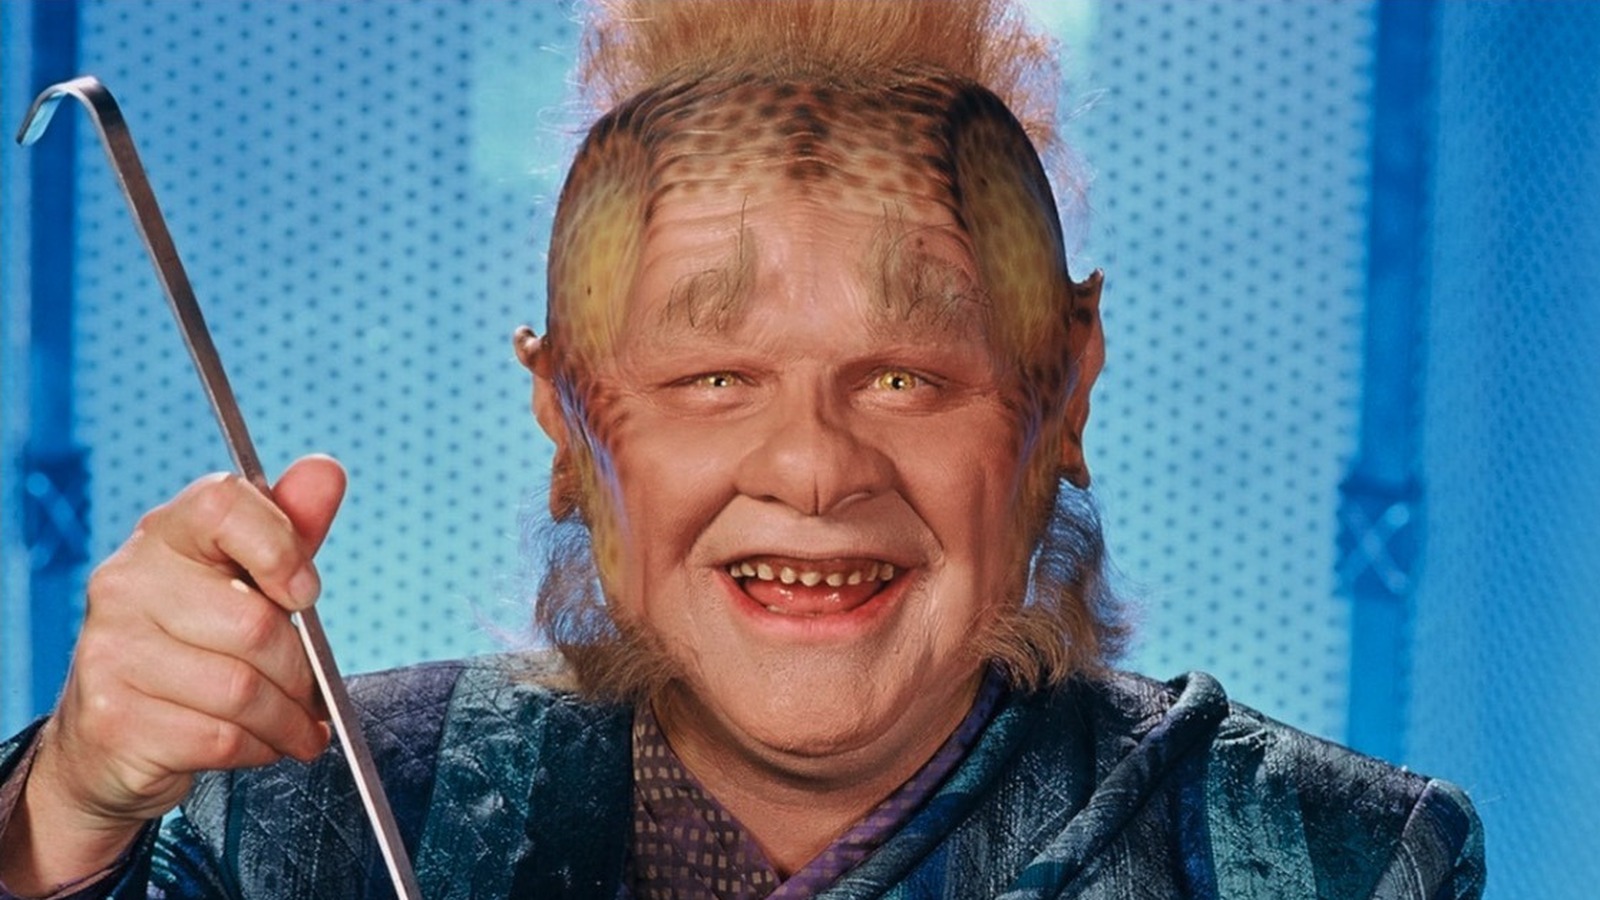 Neelix's Makeup Was A Scenes Star Trek: Voyager